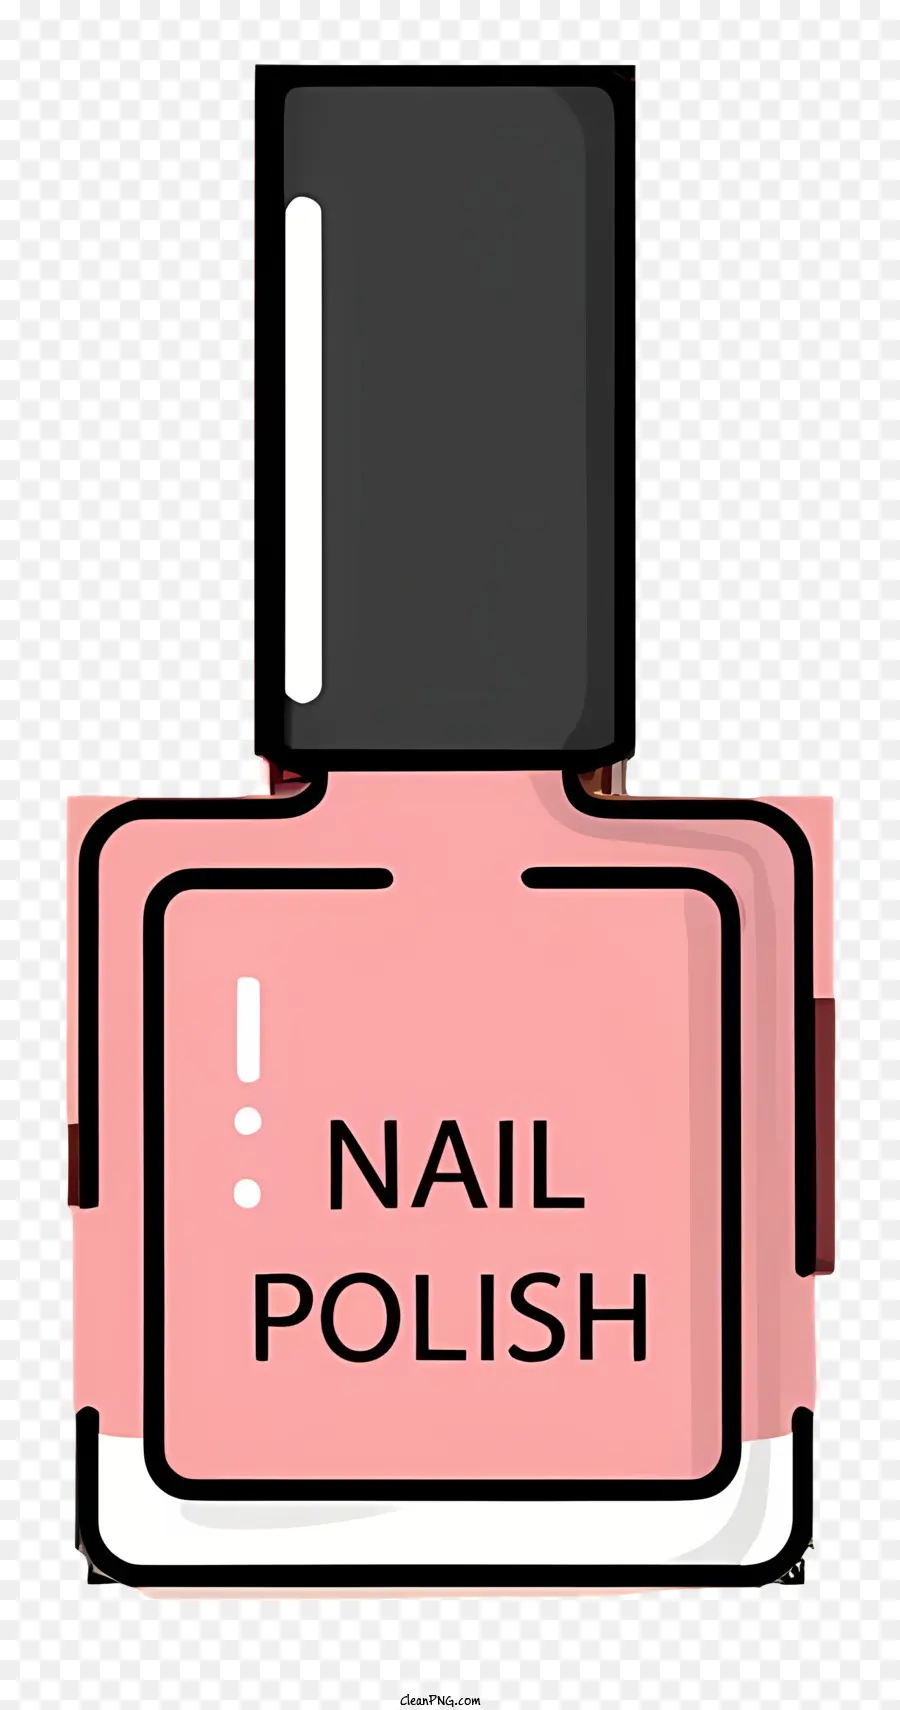 pink nail polish nail polish bottle black background nail polish label white lettering